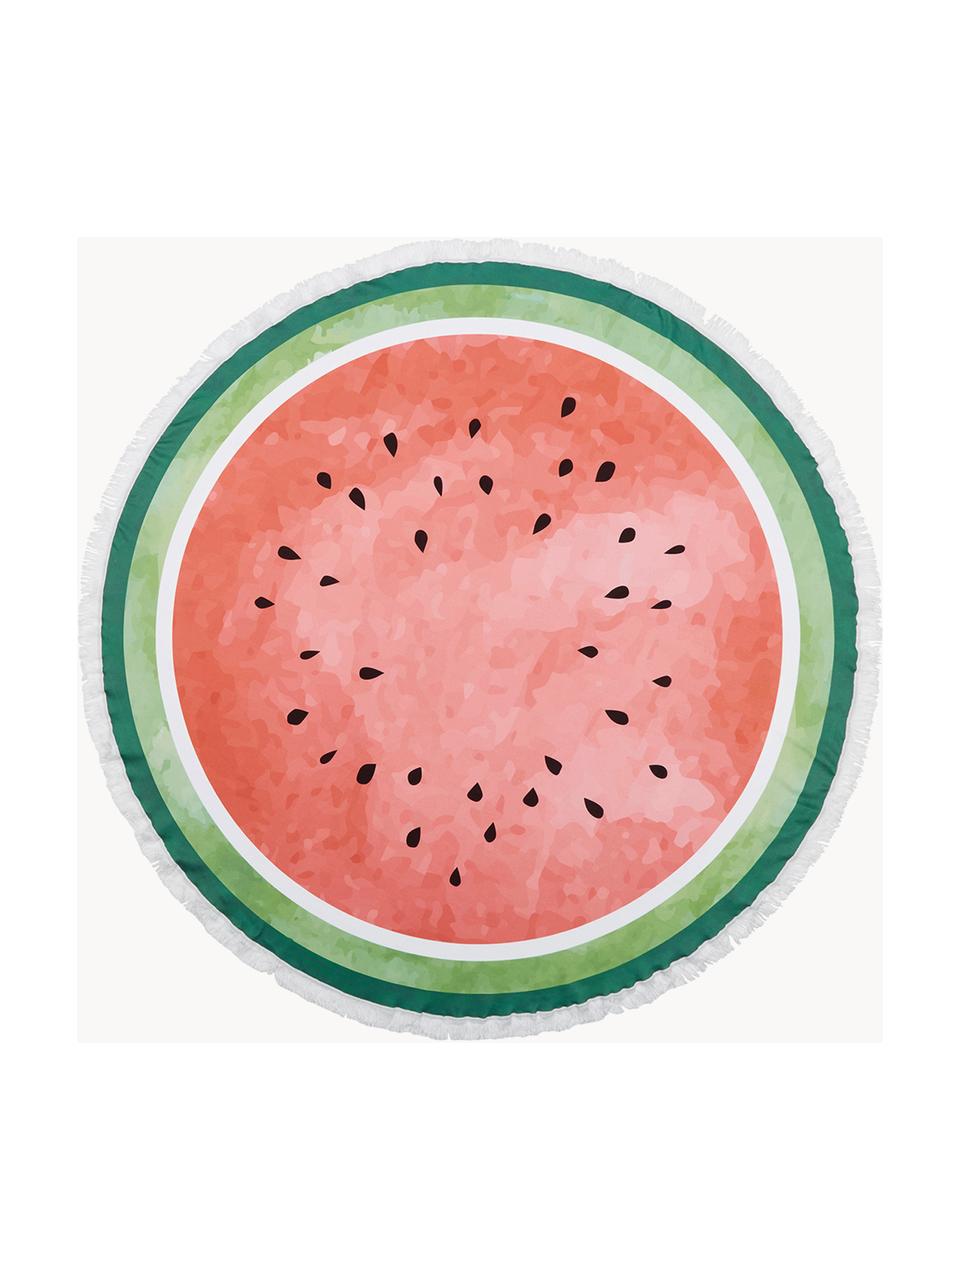 Rond strandlaken Melon, 55% polyester, 45% katoen
Zeer lichte kwaliteit 340 g/m², Donkergroen, lichtgroen, rood, Ø 150 cm